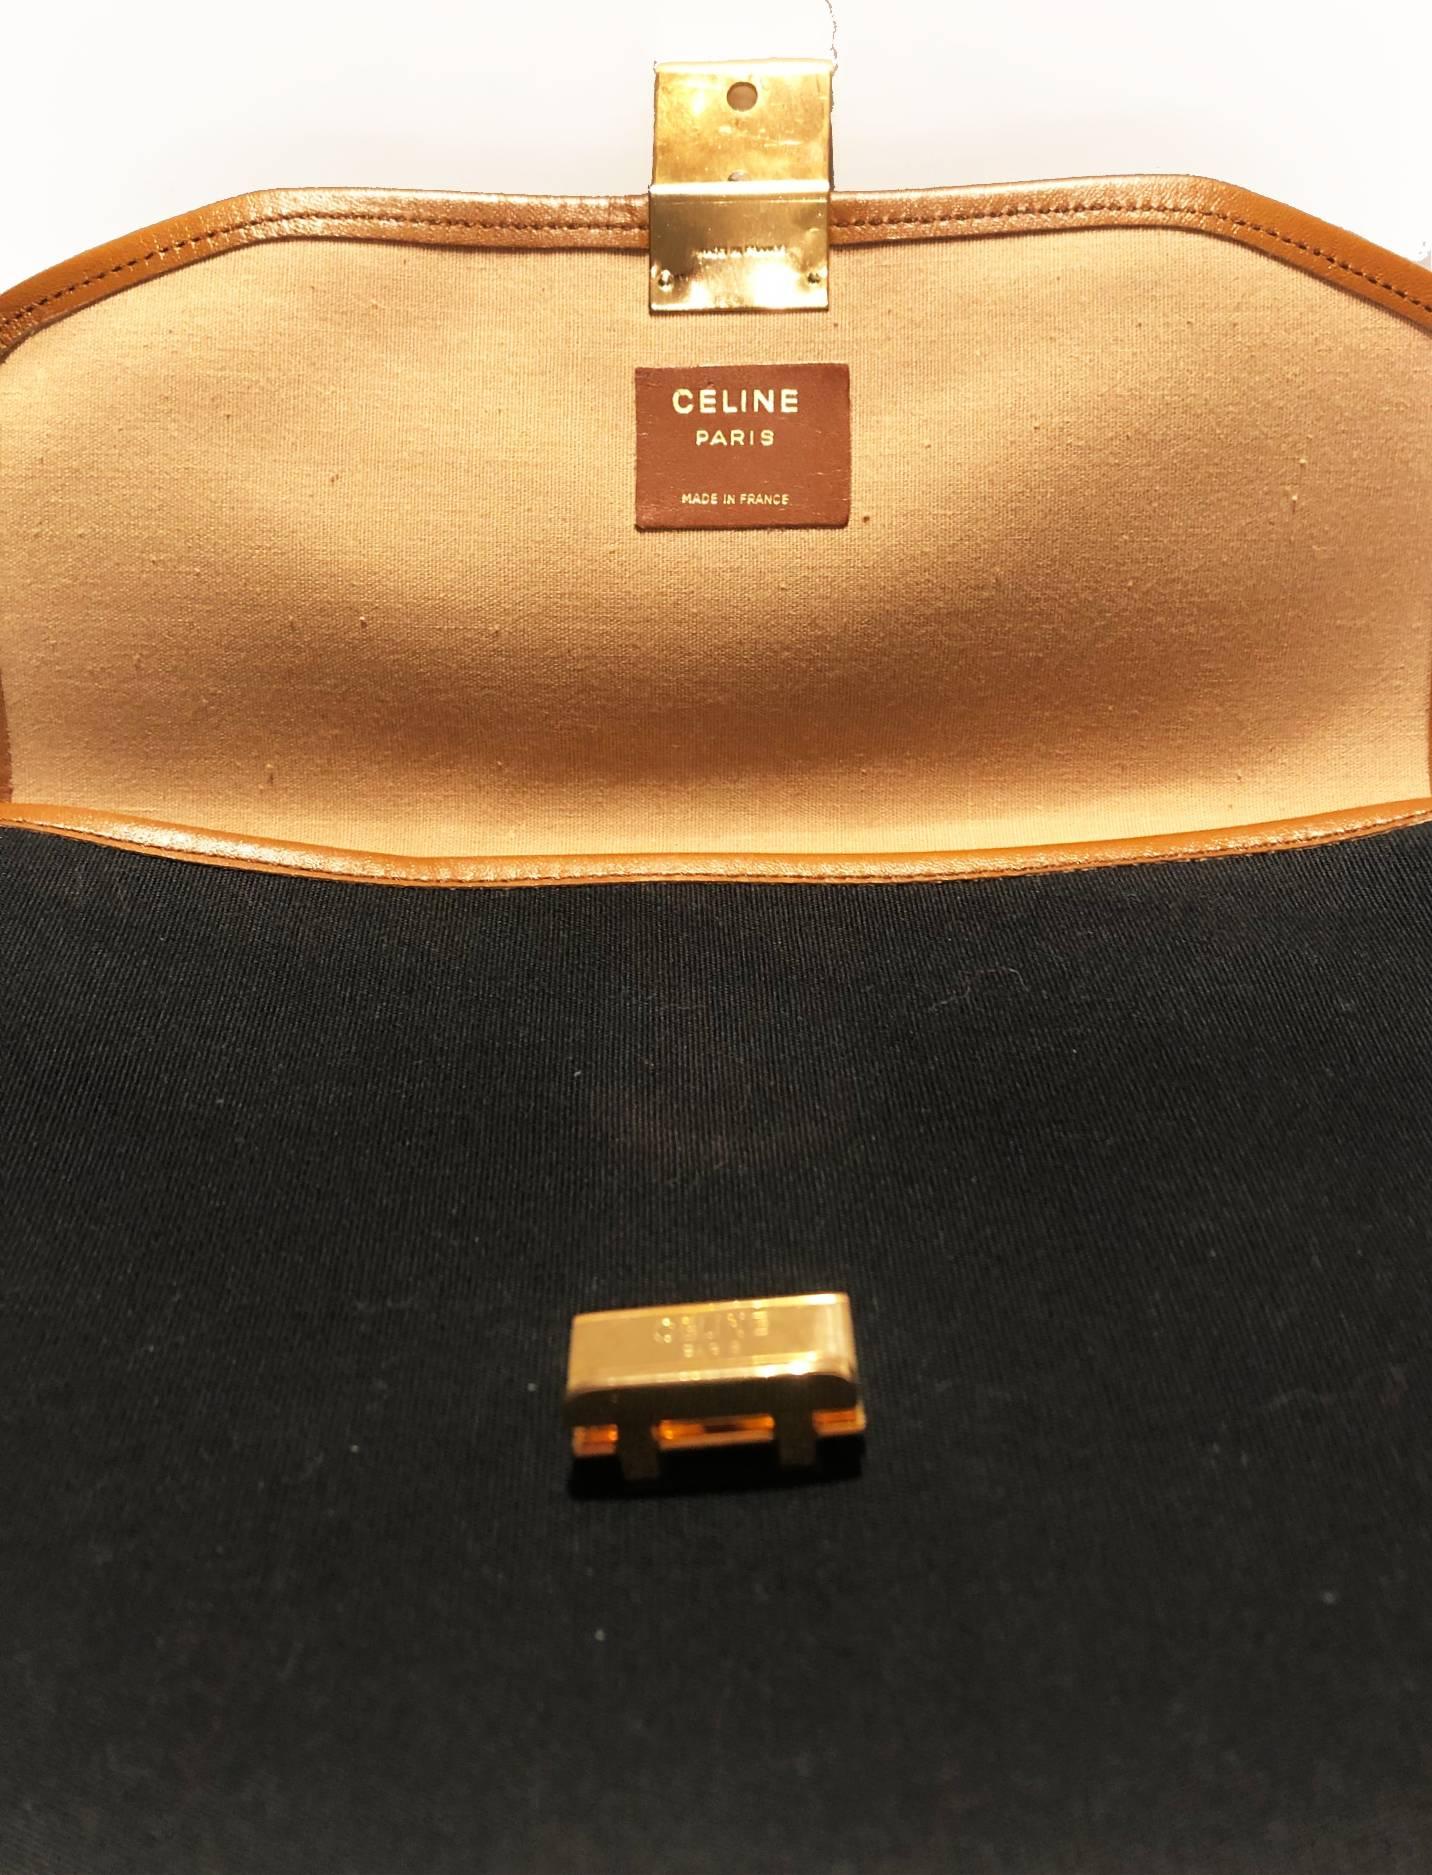 1970s Celine Paris cloth leather logo envelope clutch bag 4